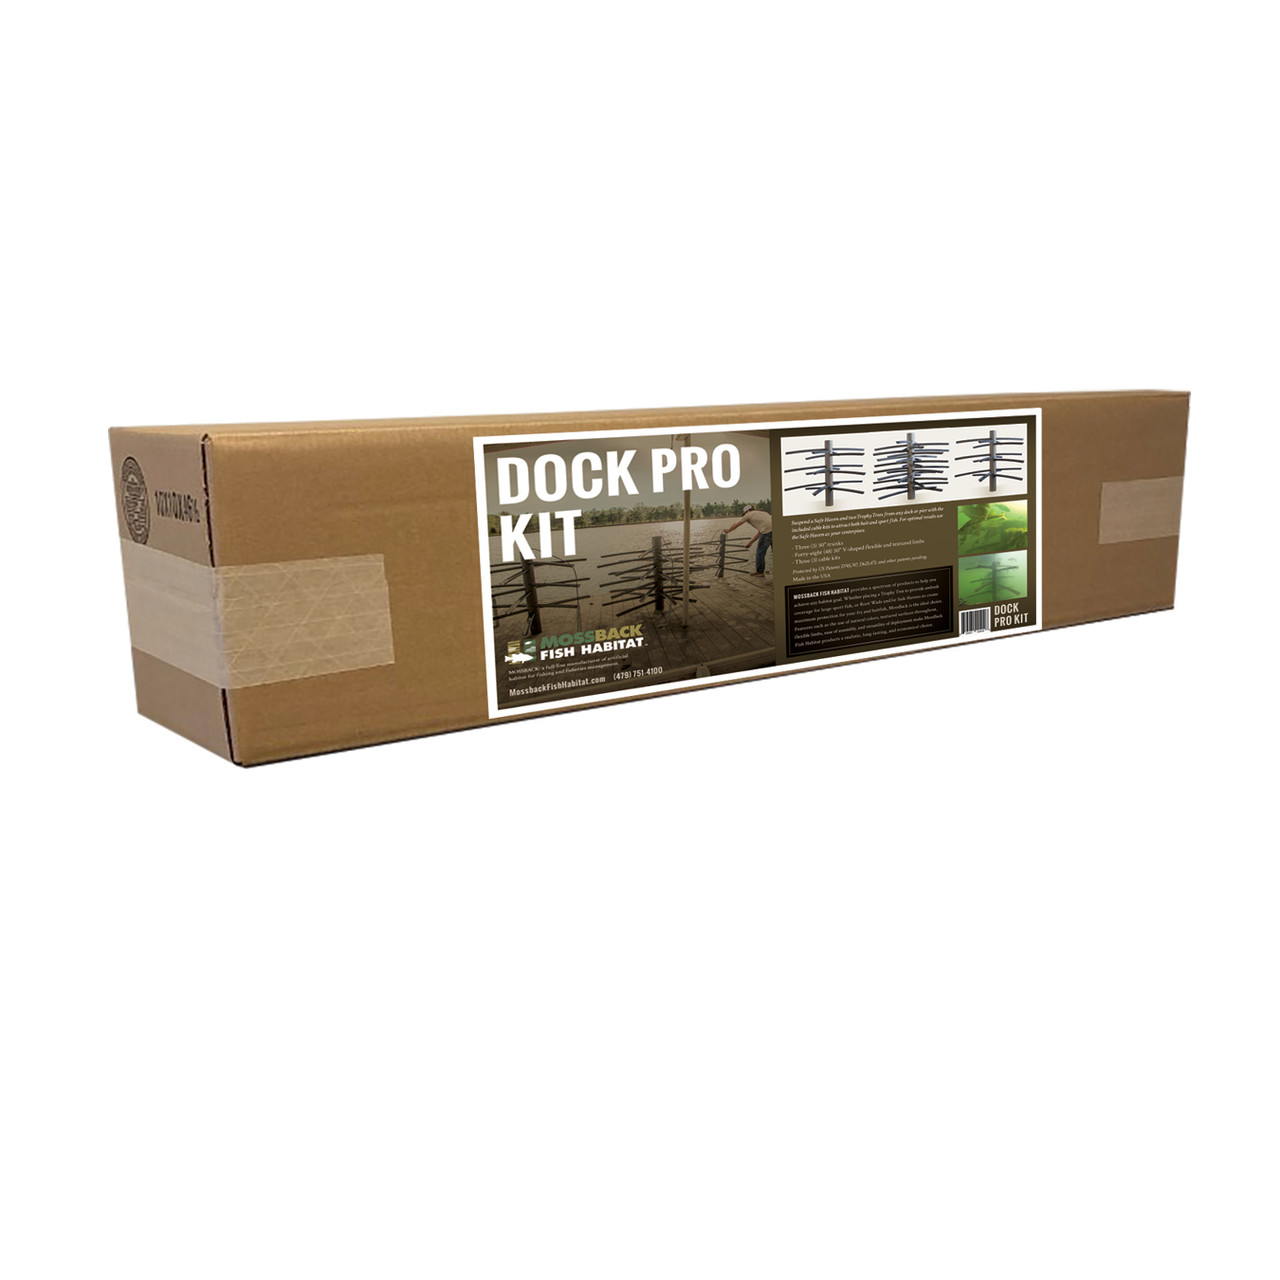 Dock Pro Kit